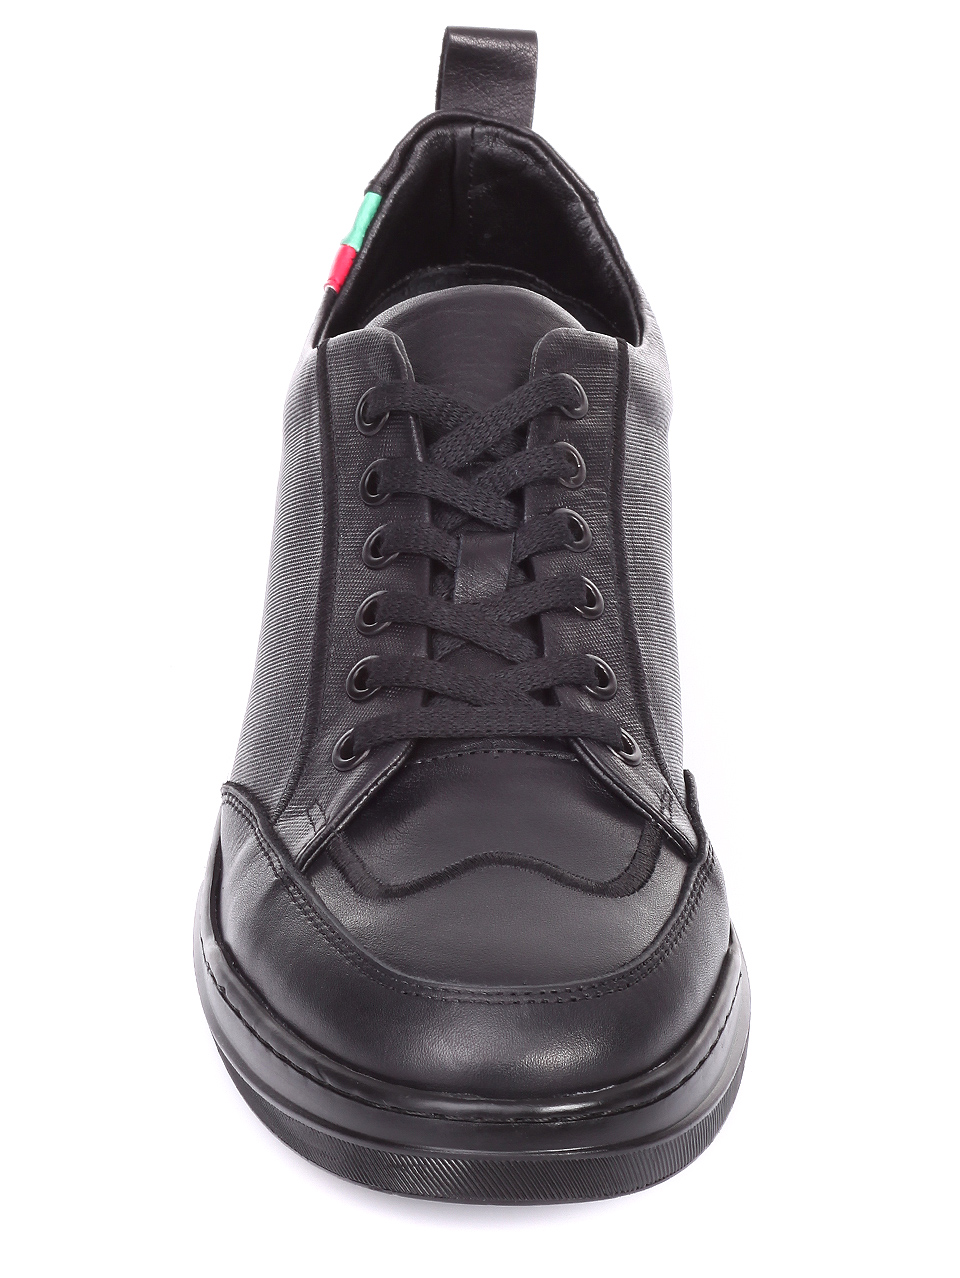 Ежедневни мъжки обувки от естествена кожа 7AT-19956 black